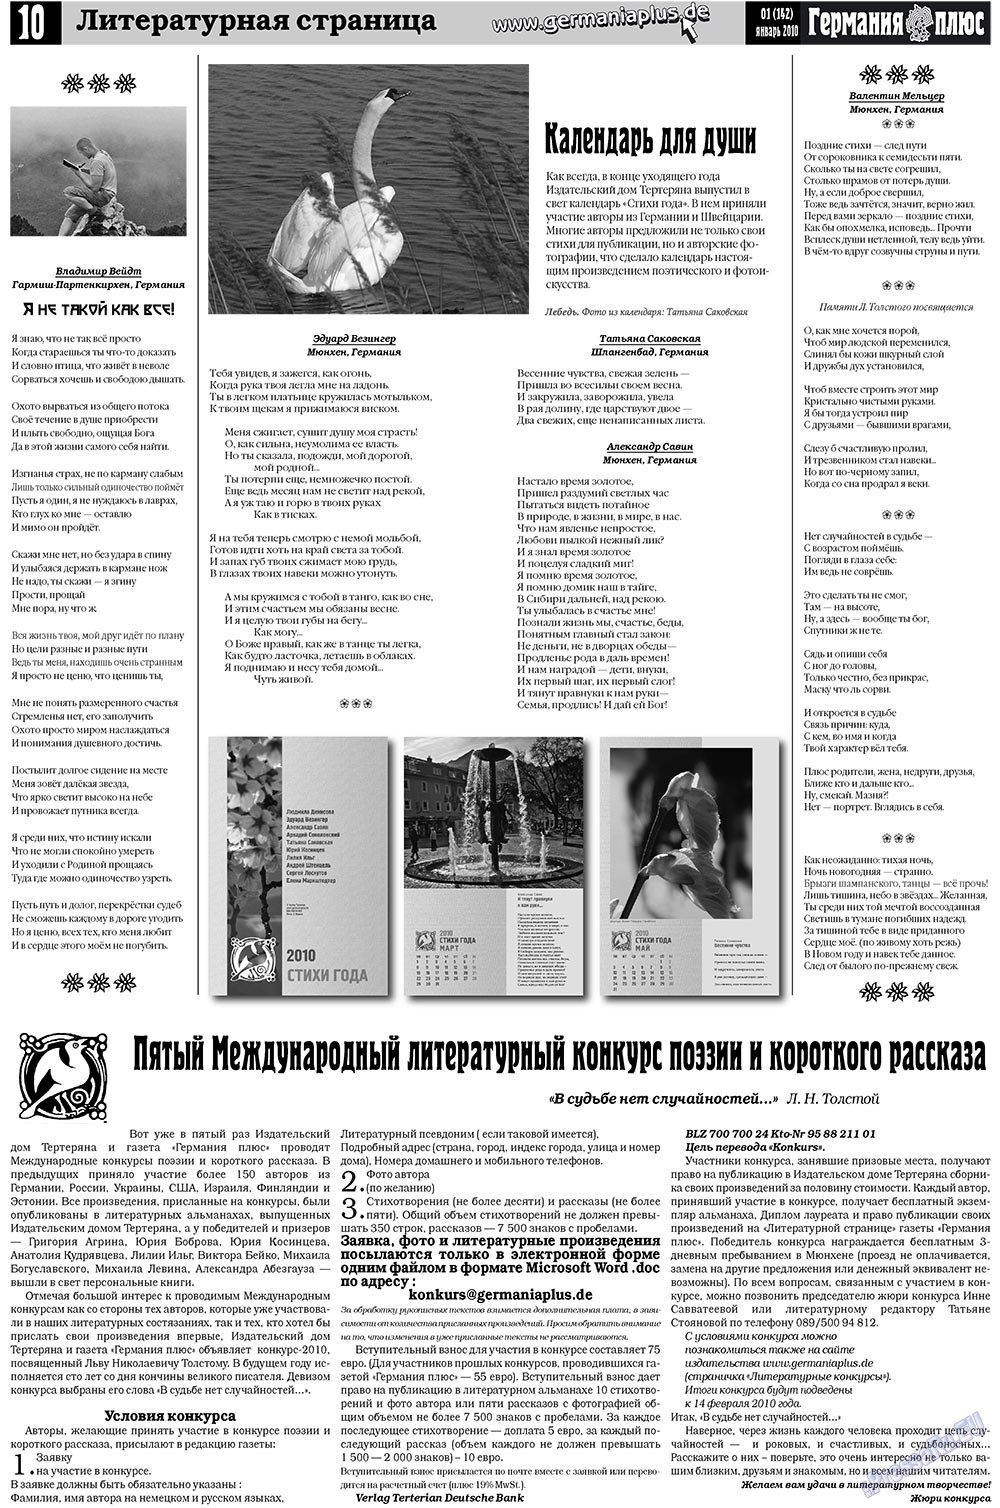 Германия плюс (газета). 2010 год, номер 1, стр. 10